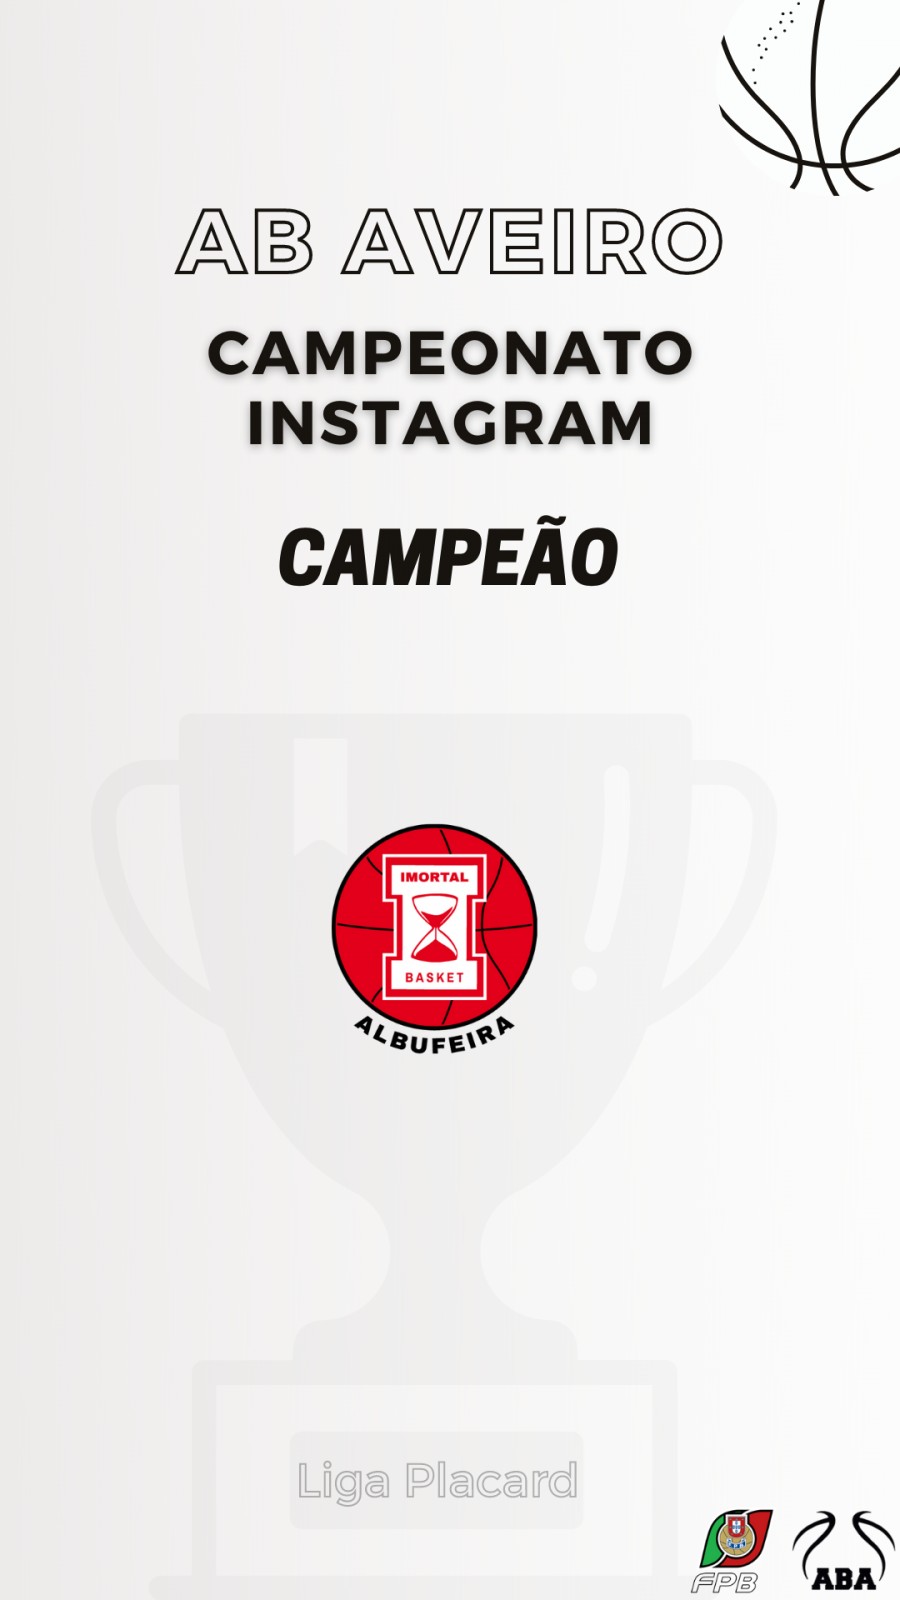 Campeonato da Liga Placard no Instagram da ABA